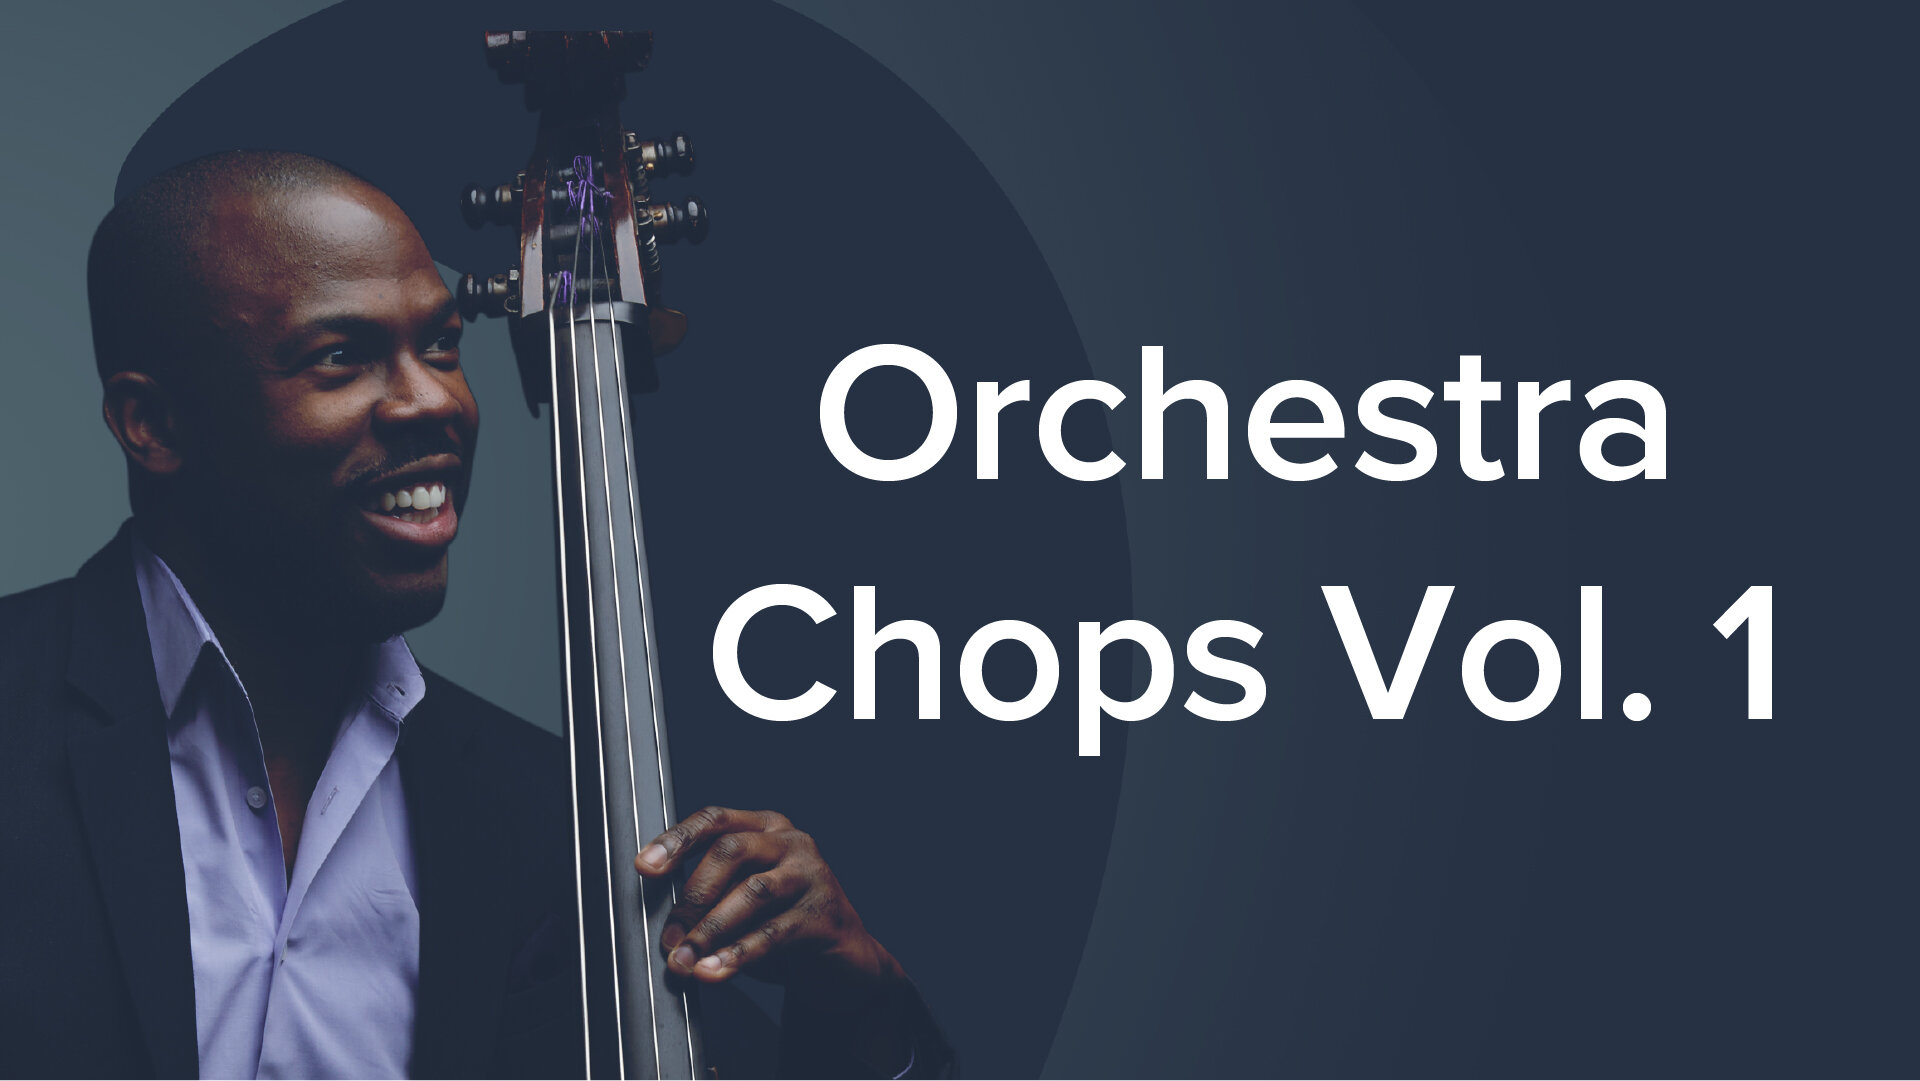 Orchestra Chops Vol. 1 